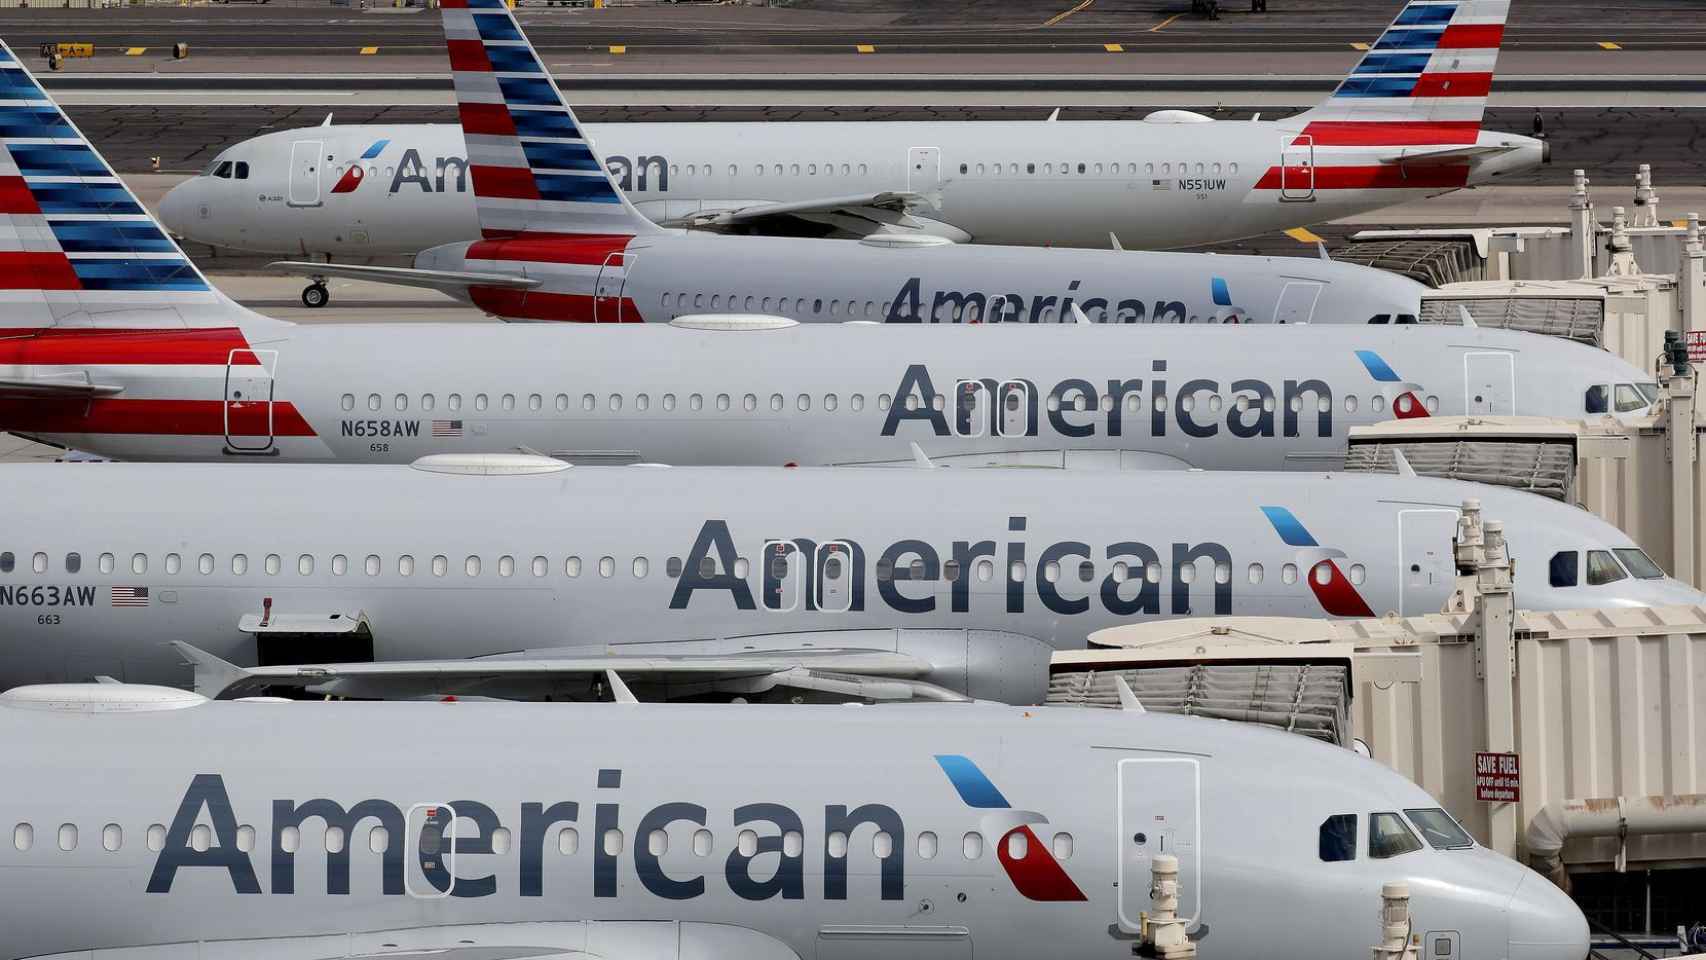 Aviones de la compañía American Airlines a punto de despegar / ARCHIVO